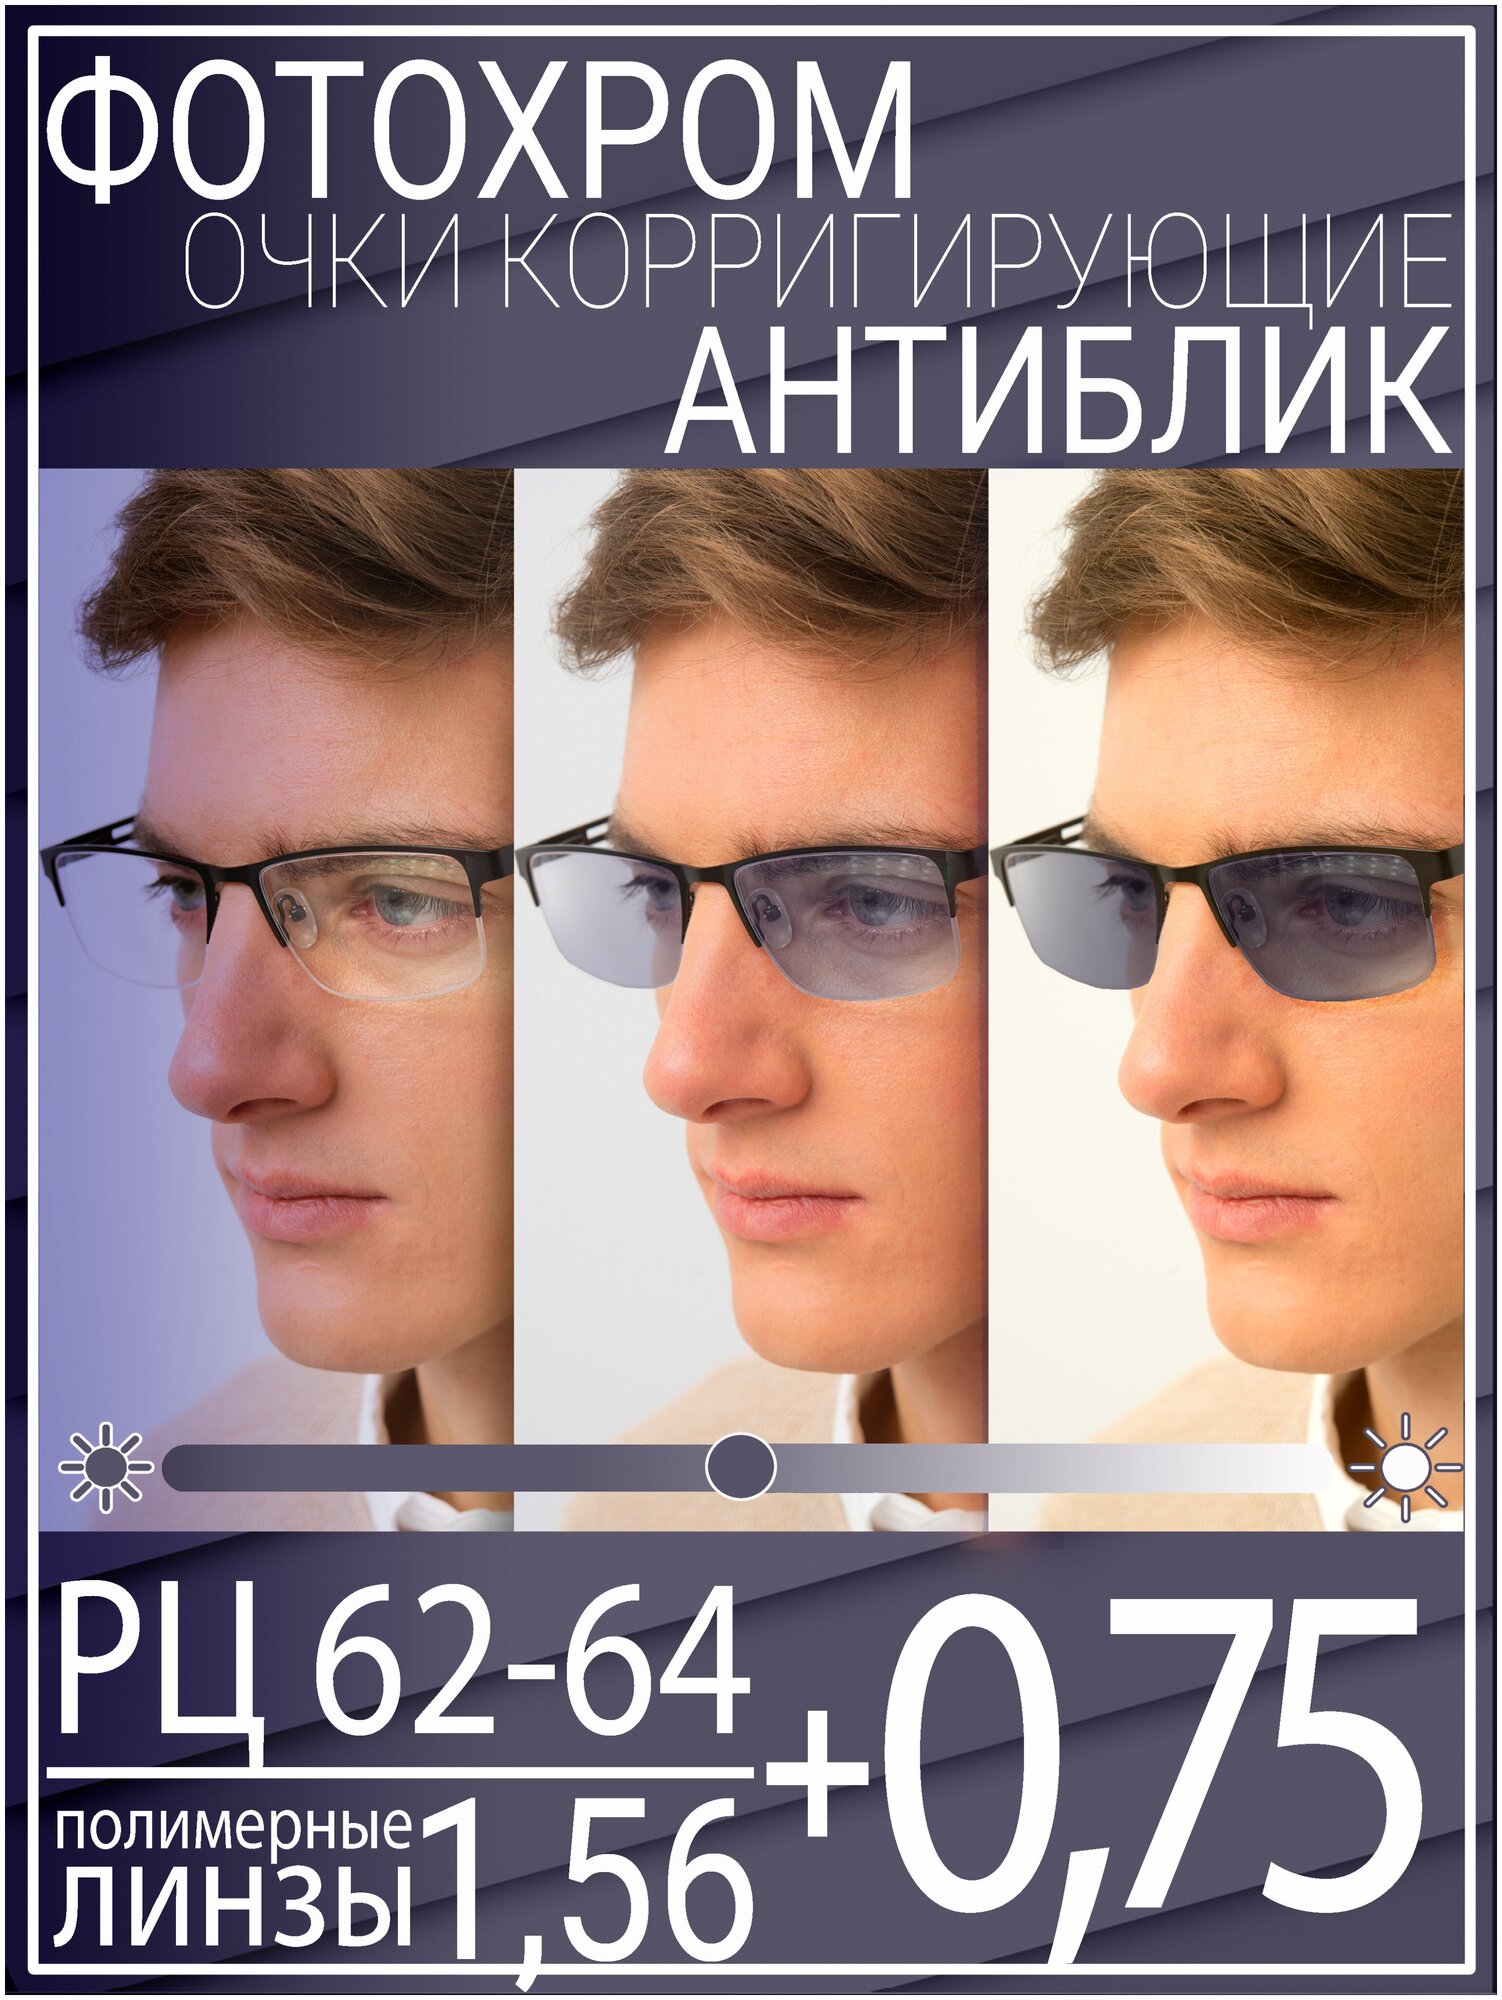 Готовые очки для зрения с фотохромной линзой +0.75 РЦ 62-64 / Очки корригирующие мужские